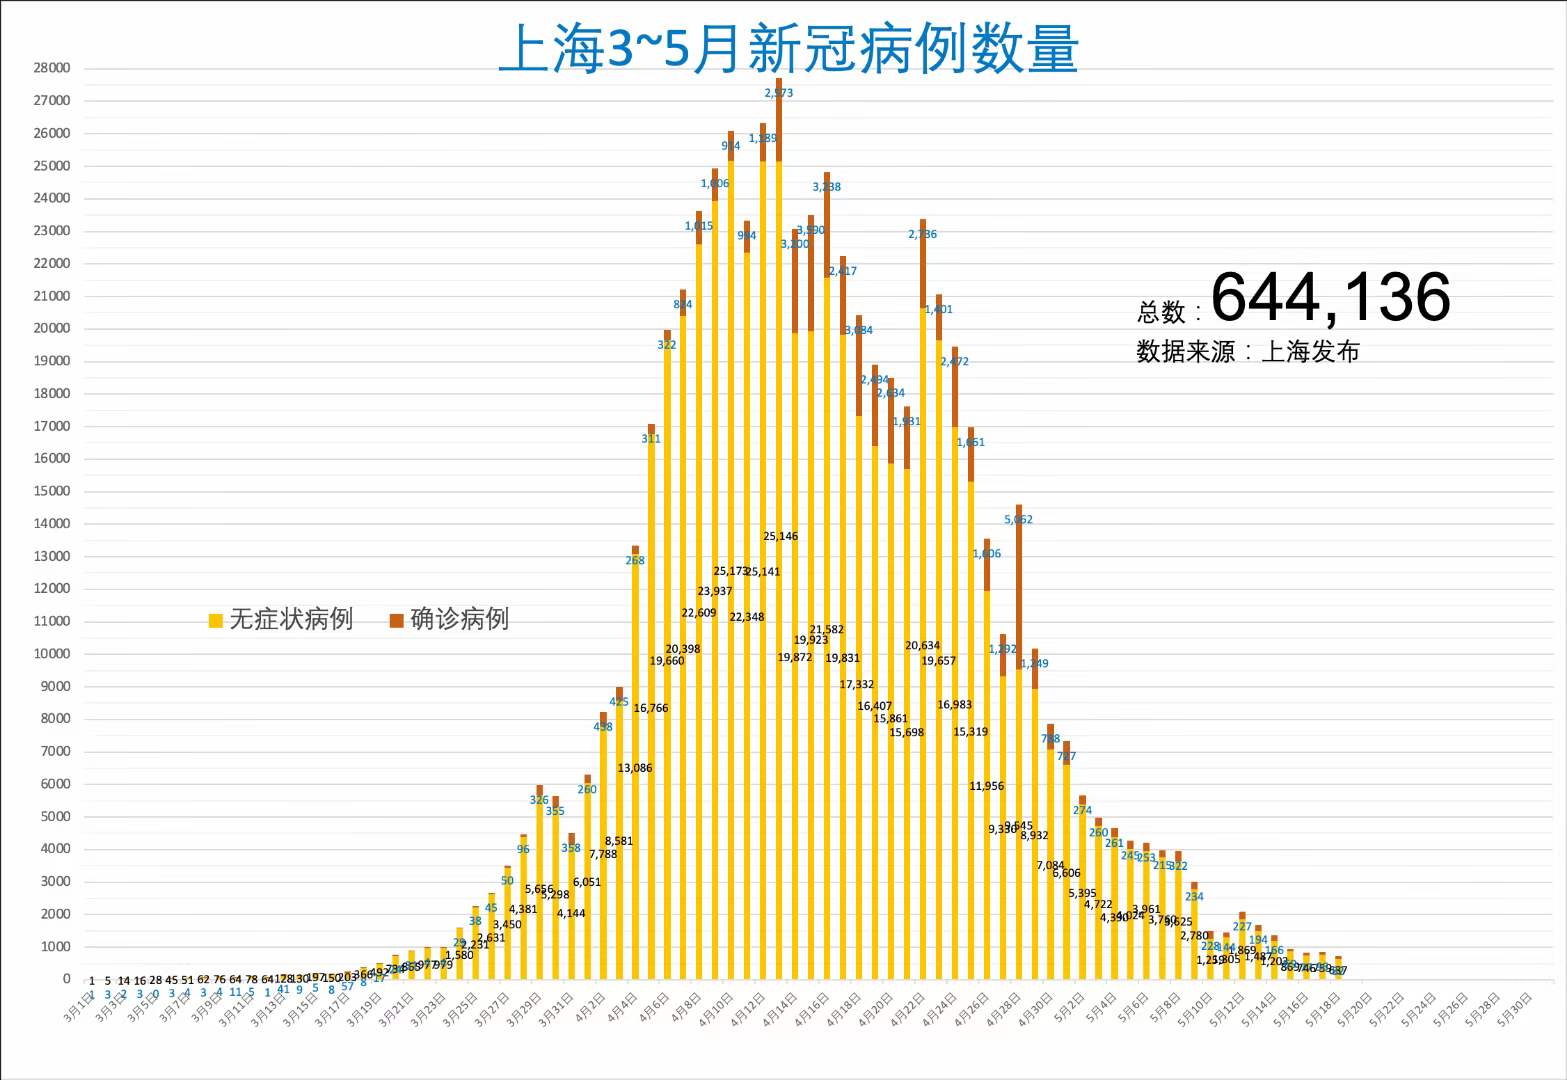 上海昨日新增本土新<font color="red">冠</font>肺炎确诊病例82+637例，死亡1例，在每天700-900例之间震荡（2022.5.19）